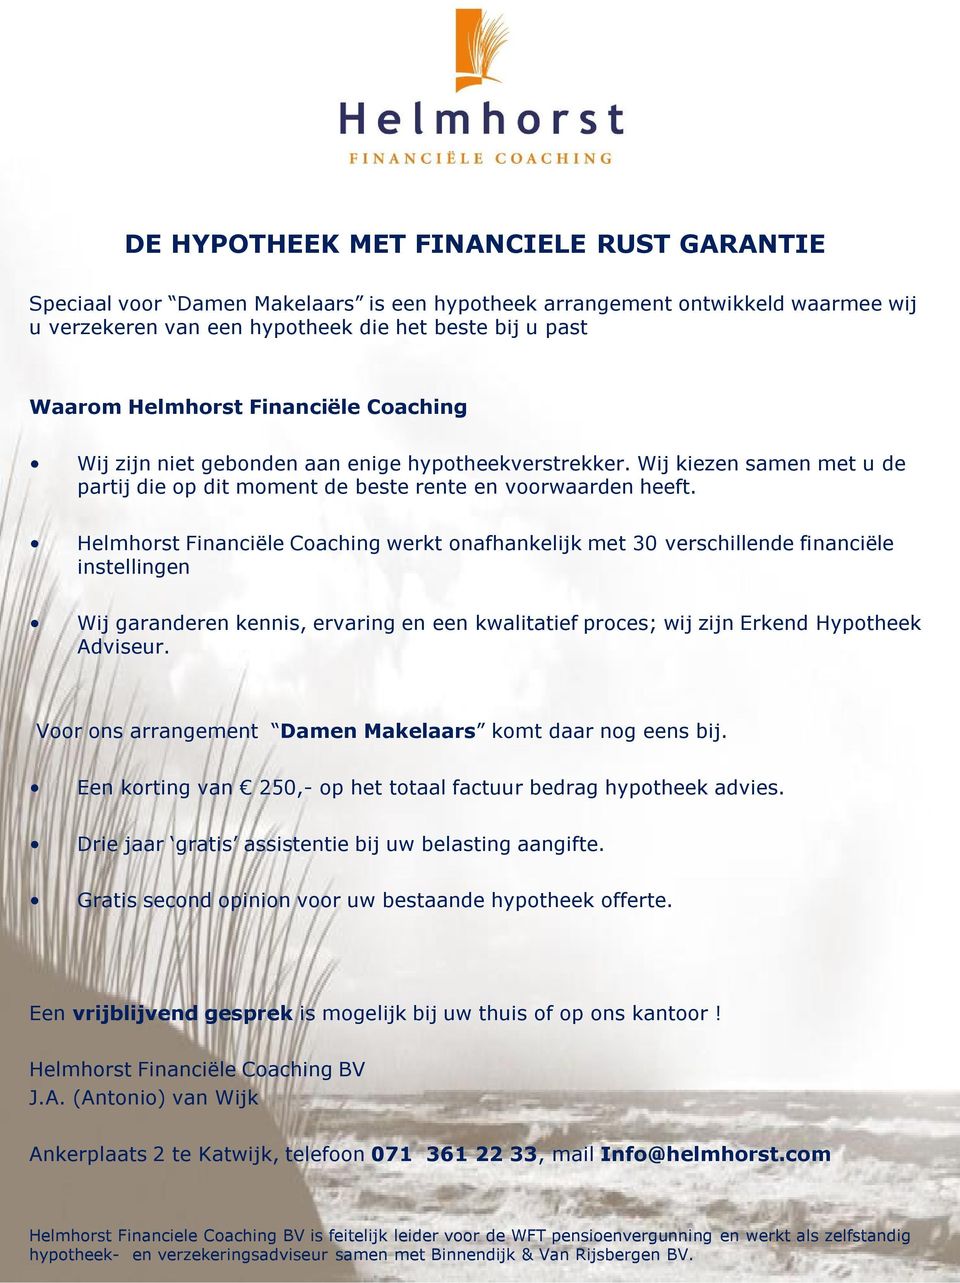 Helmhorst Financiële Coaching werkt onafhankelijk met 30 verschillende financiële instellingen Wij garanderen kennis, ervaring en een kwalitatief proces; wij zijn Erkend Hypotheek Adviseur.